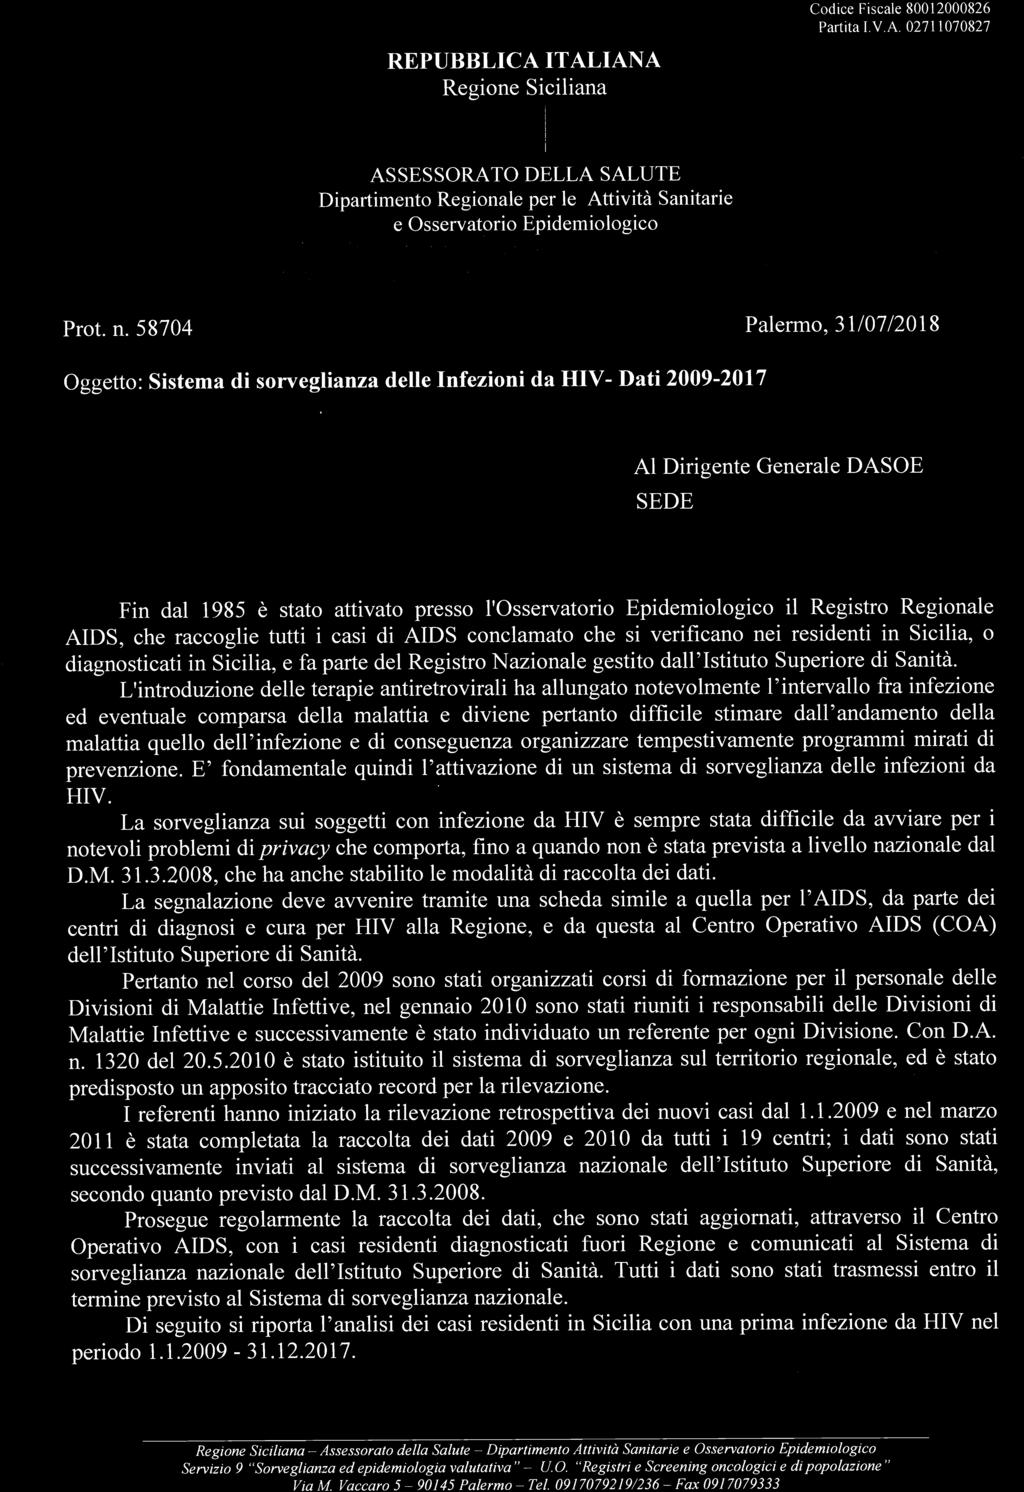 58704 Palermo, 31/07/2018 Oggetto: Sistema di sorveglianza delle Infezioni da HIV- Dati 2009-2017 Al Dirigente Generale DASOE SEDE Fin dal 1985 è stato attivato presso l'osservatorio Epidemiologico